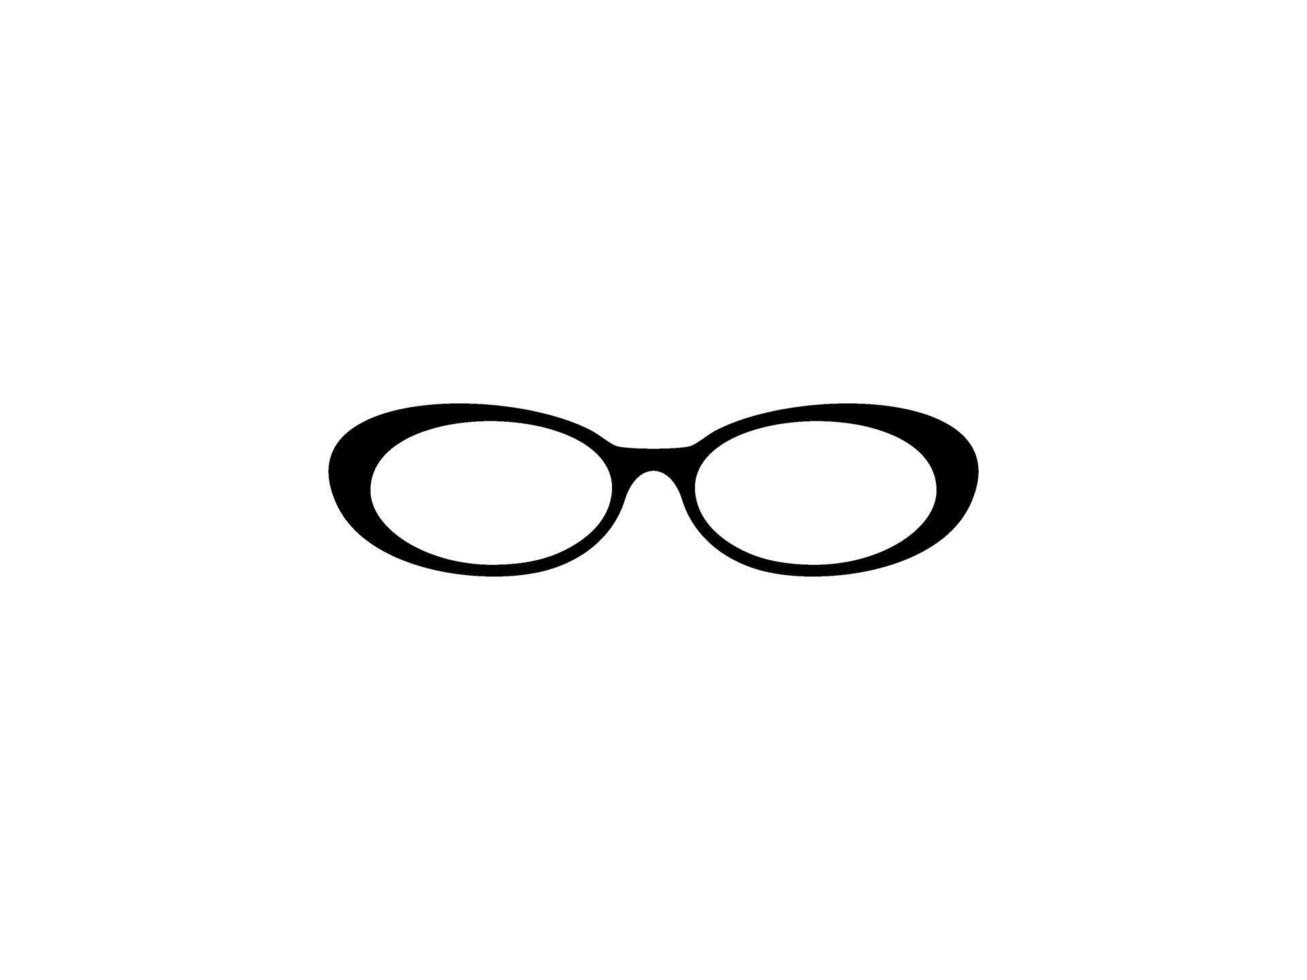 œil des lunettes silhouette, de face voir, plat style, pouvez utilisation pour pictogramme, logo gramme, applications, art illustration, modèle pour avatar profil image, site Internet, ou graphique conception élément. vecteur illustration